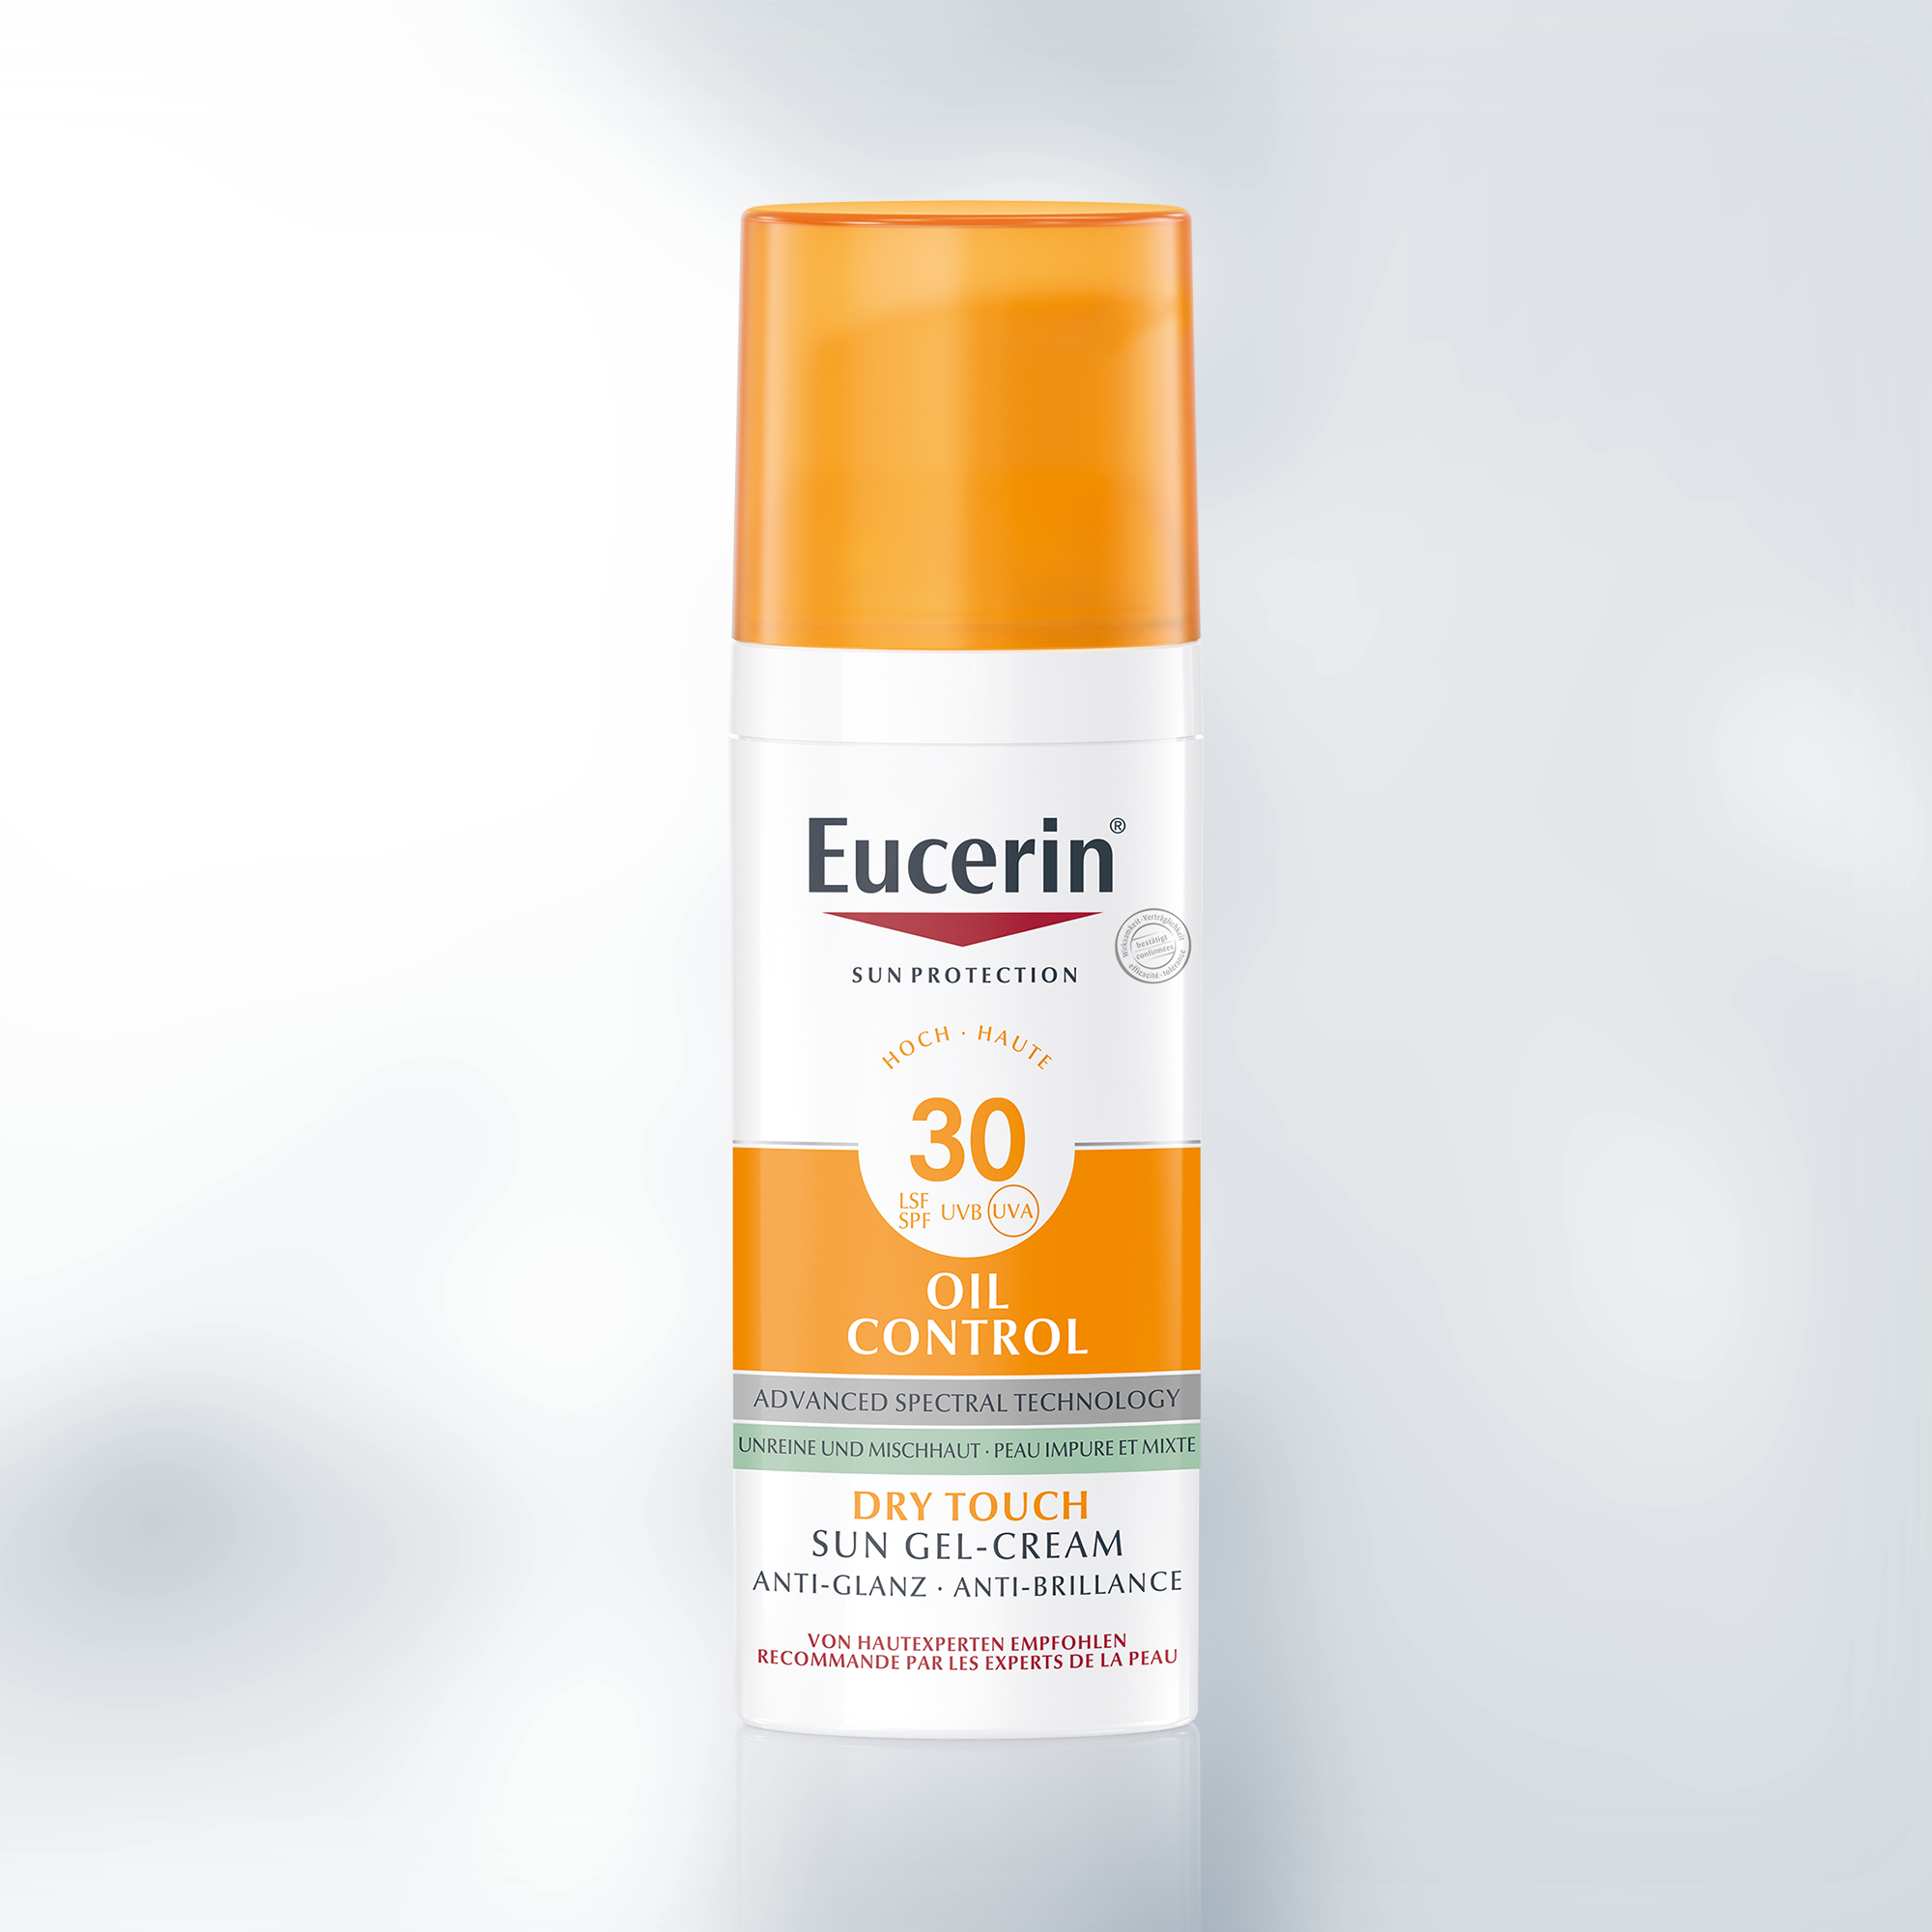 Eucerin Oil Control Face Sun Gel-Creme SPF 30